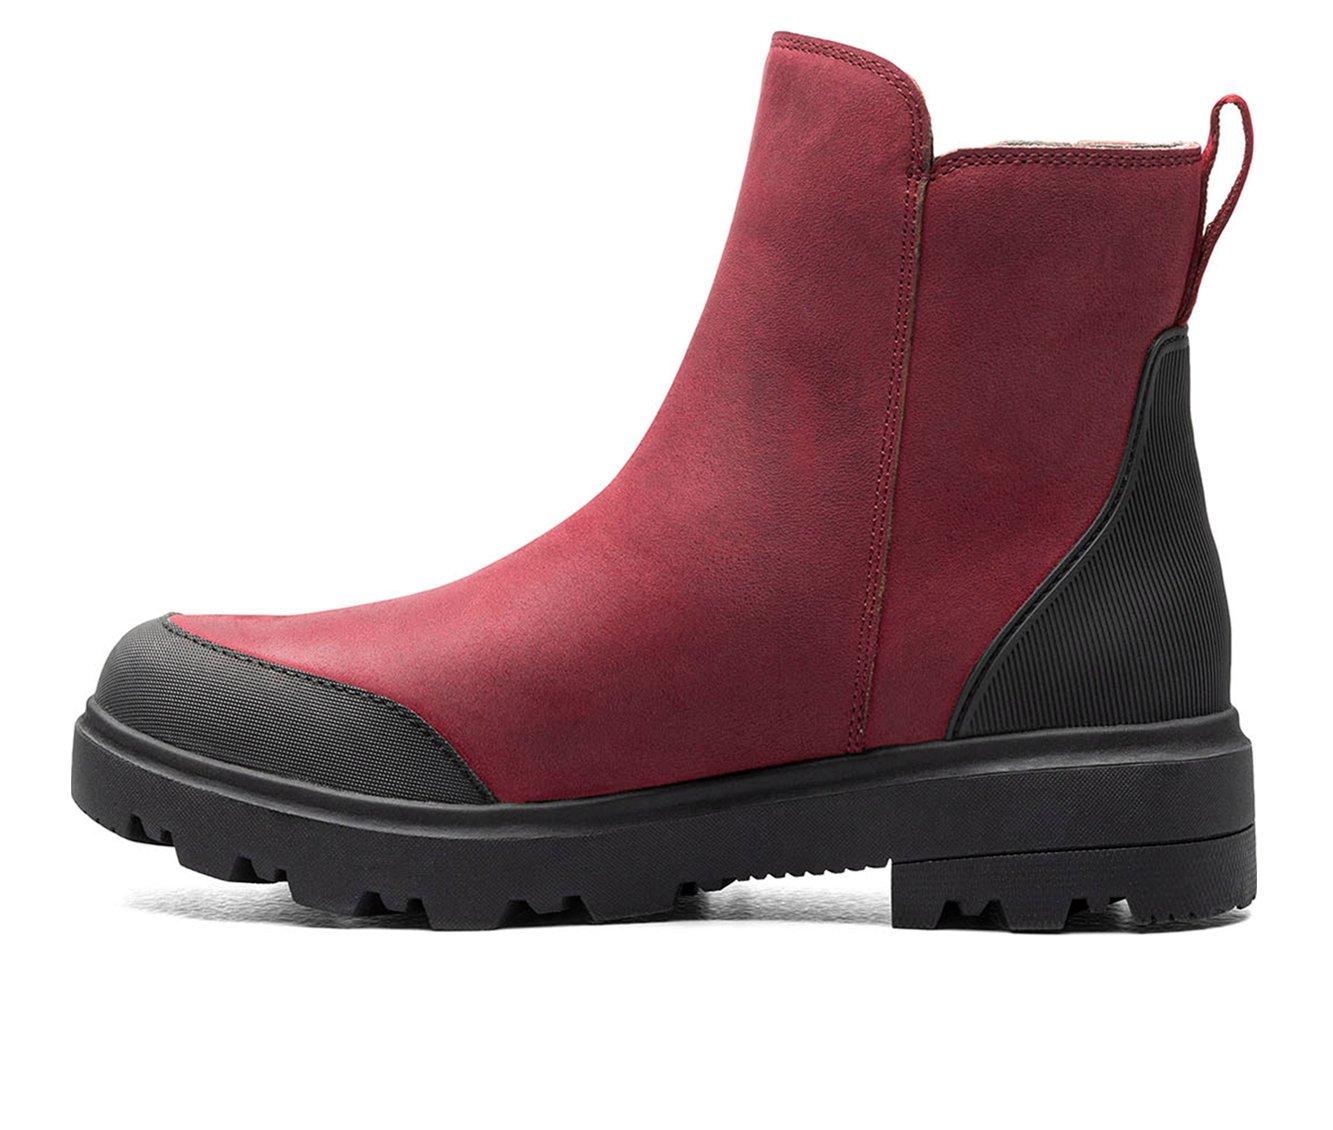 Women's Bogs Footwear Holly Zip Leather Winter Boots